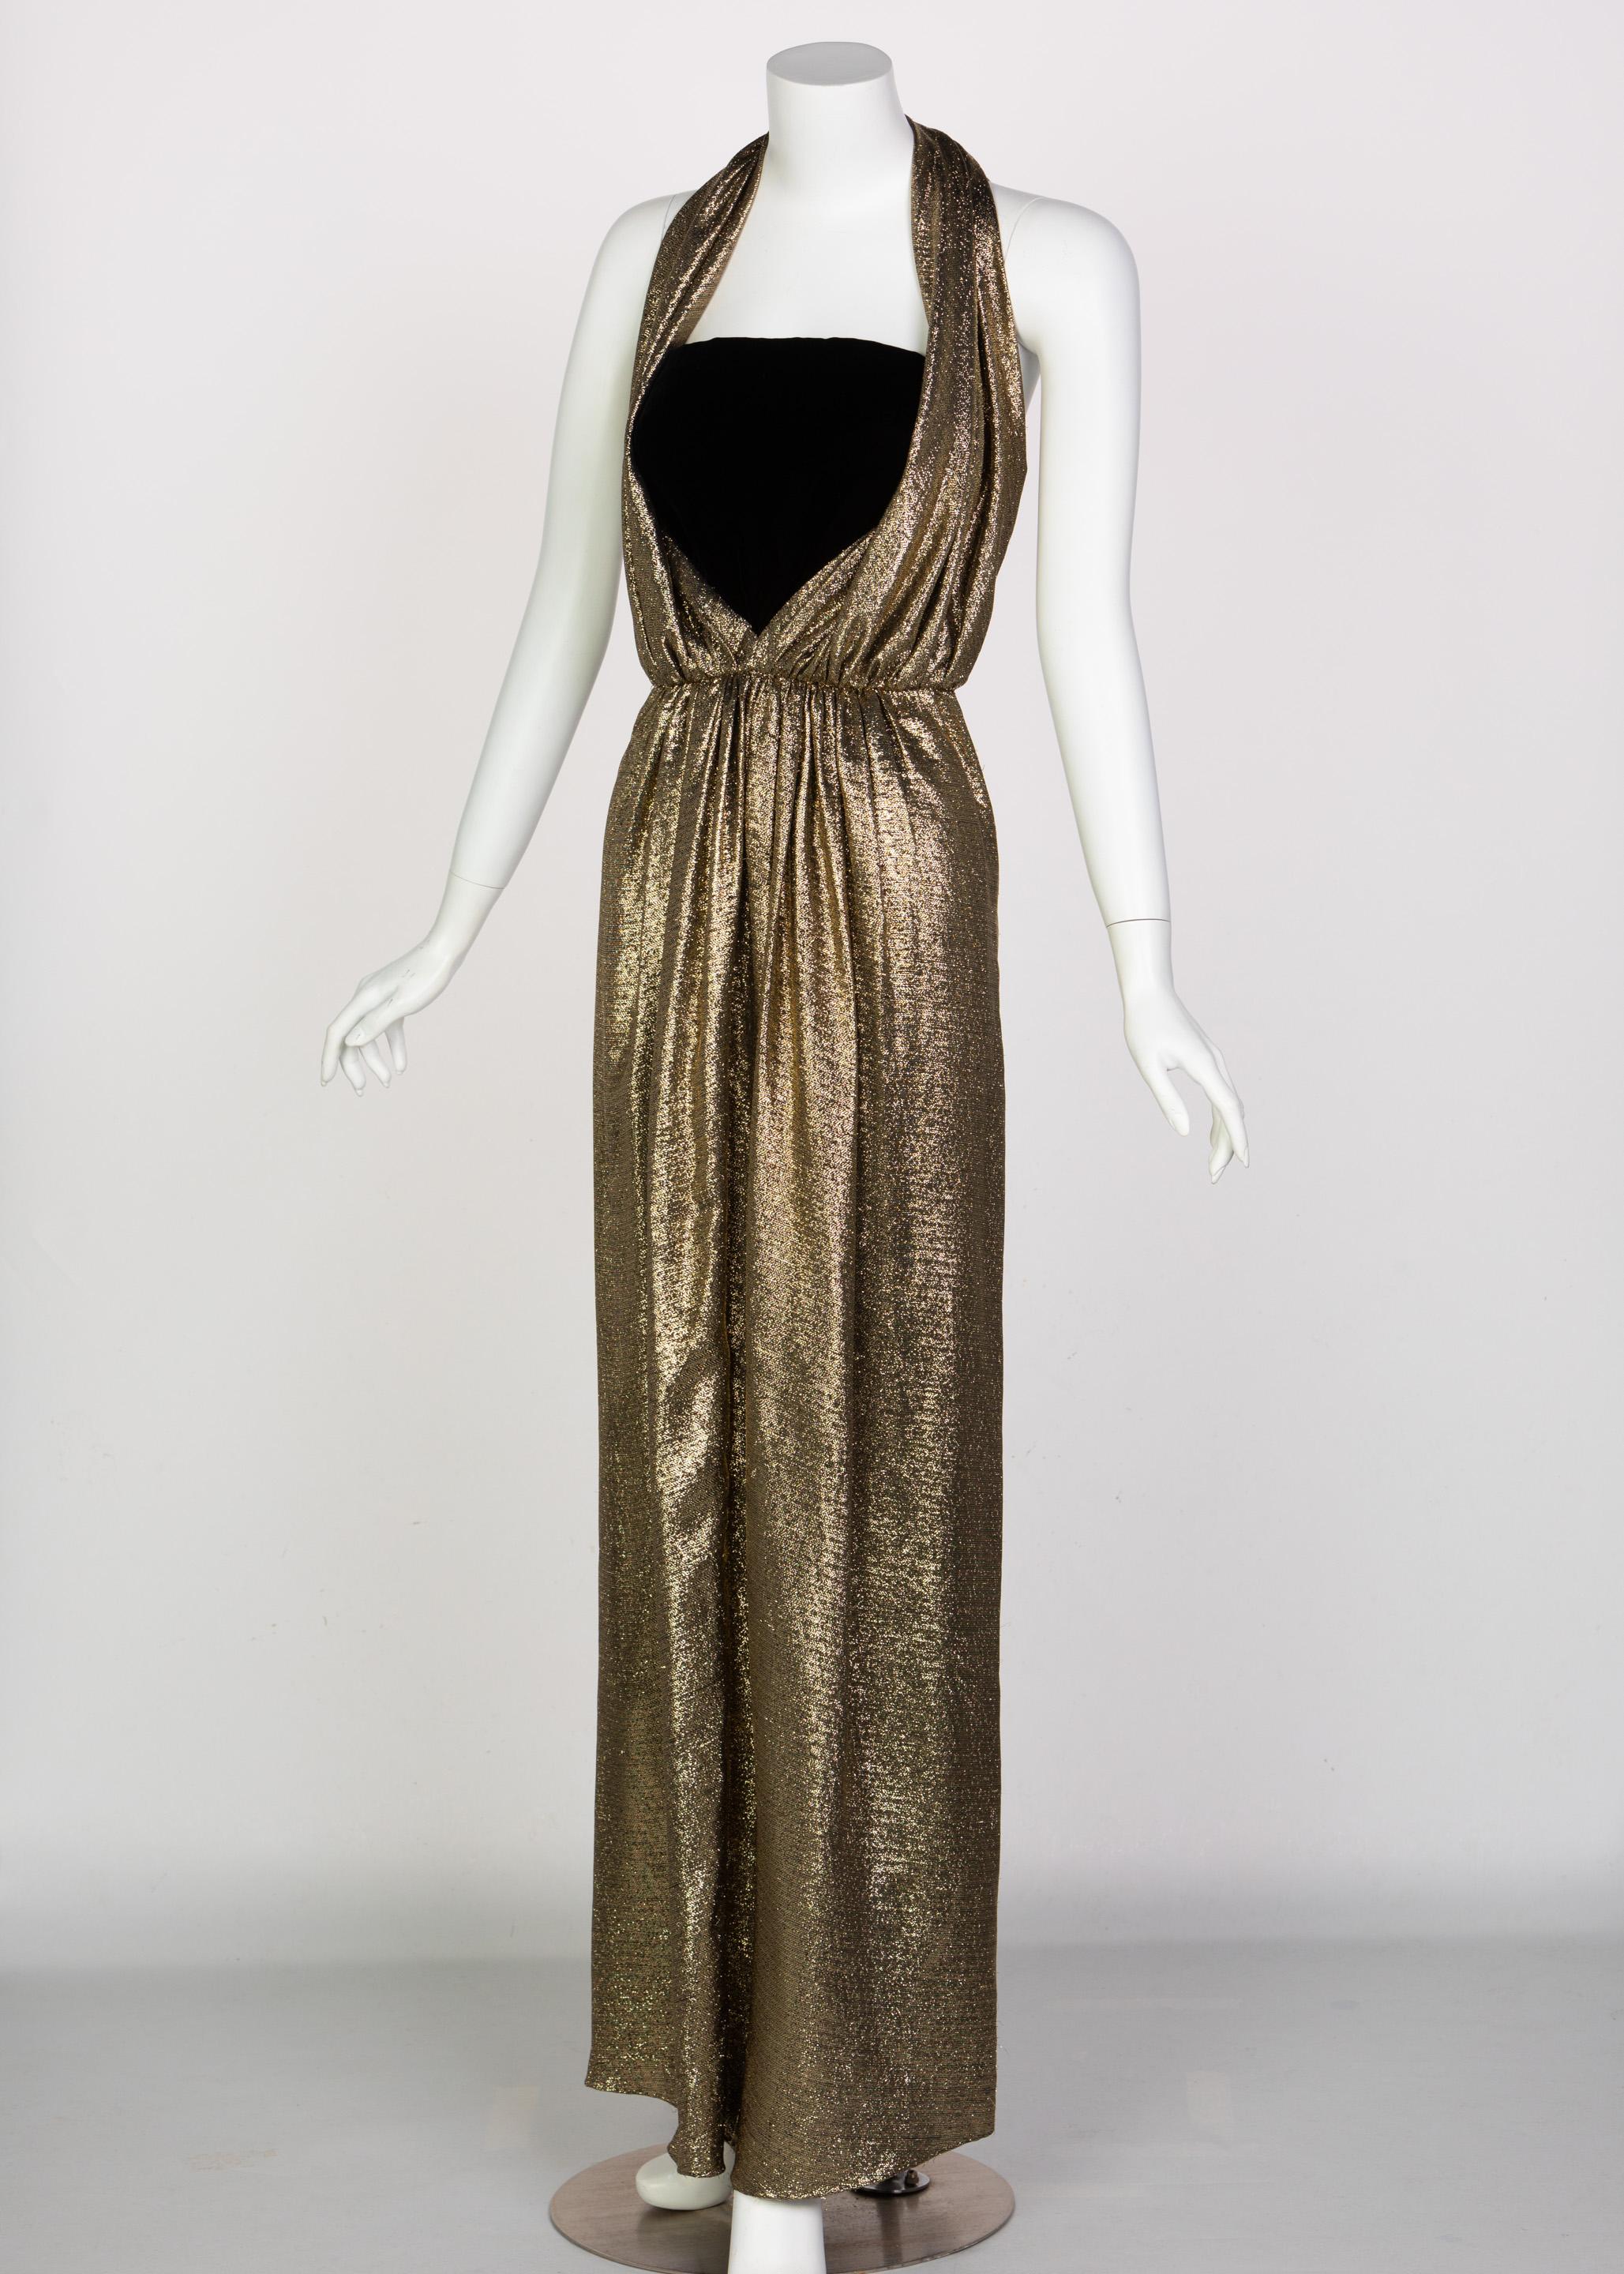 Bevor es Halston gab, gab es Bill Blass als Inbegriff des amerikanischen Stils. Der Aufstieg von Blass in den 1940er Jahren führte dazu, dass er zu einem der bekanntesten Damendesigner für verschiedene Marken wie Anne Klein und Anna Miller wurde.